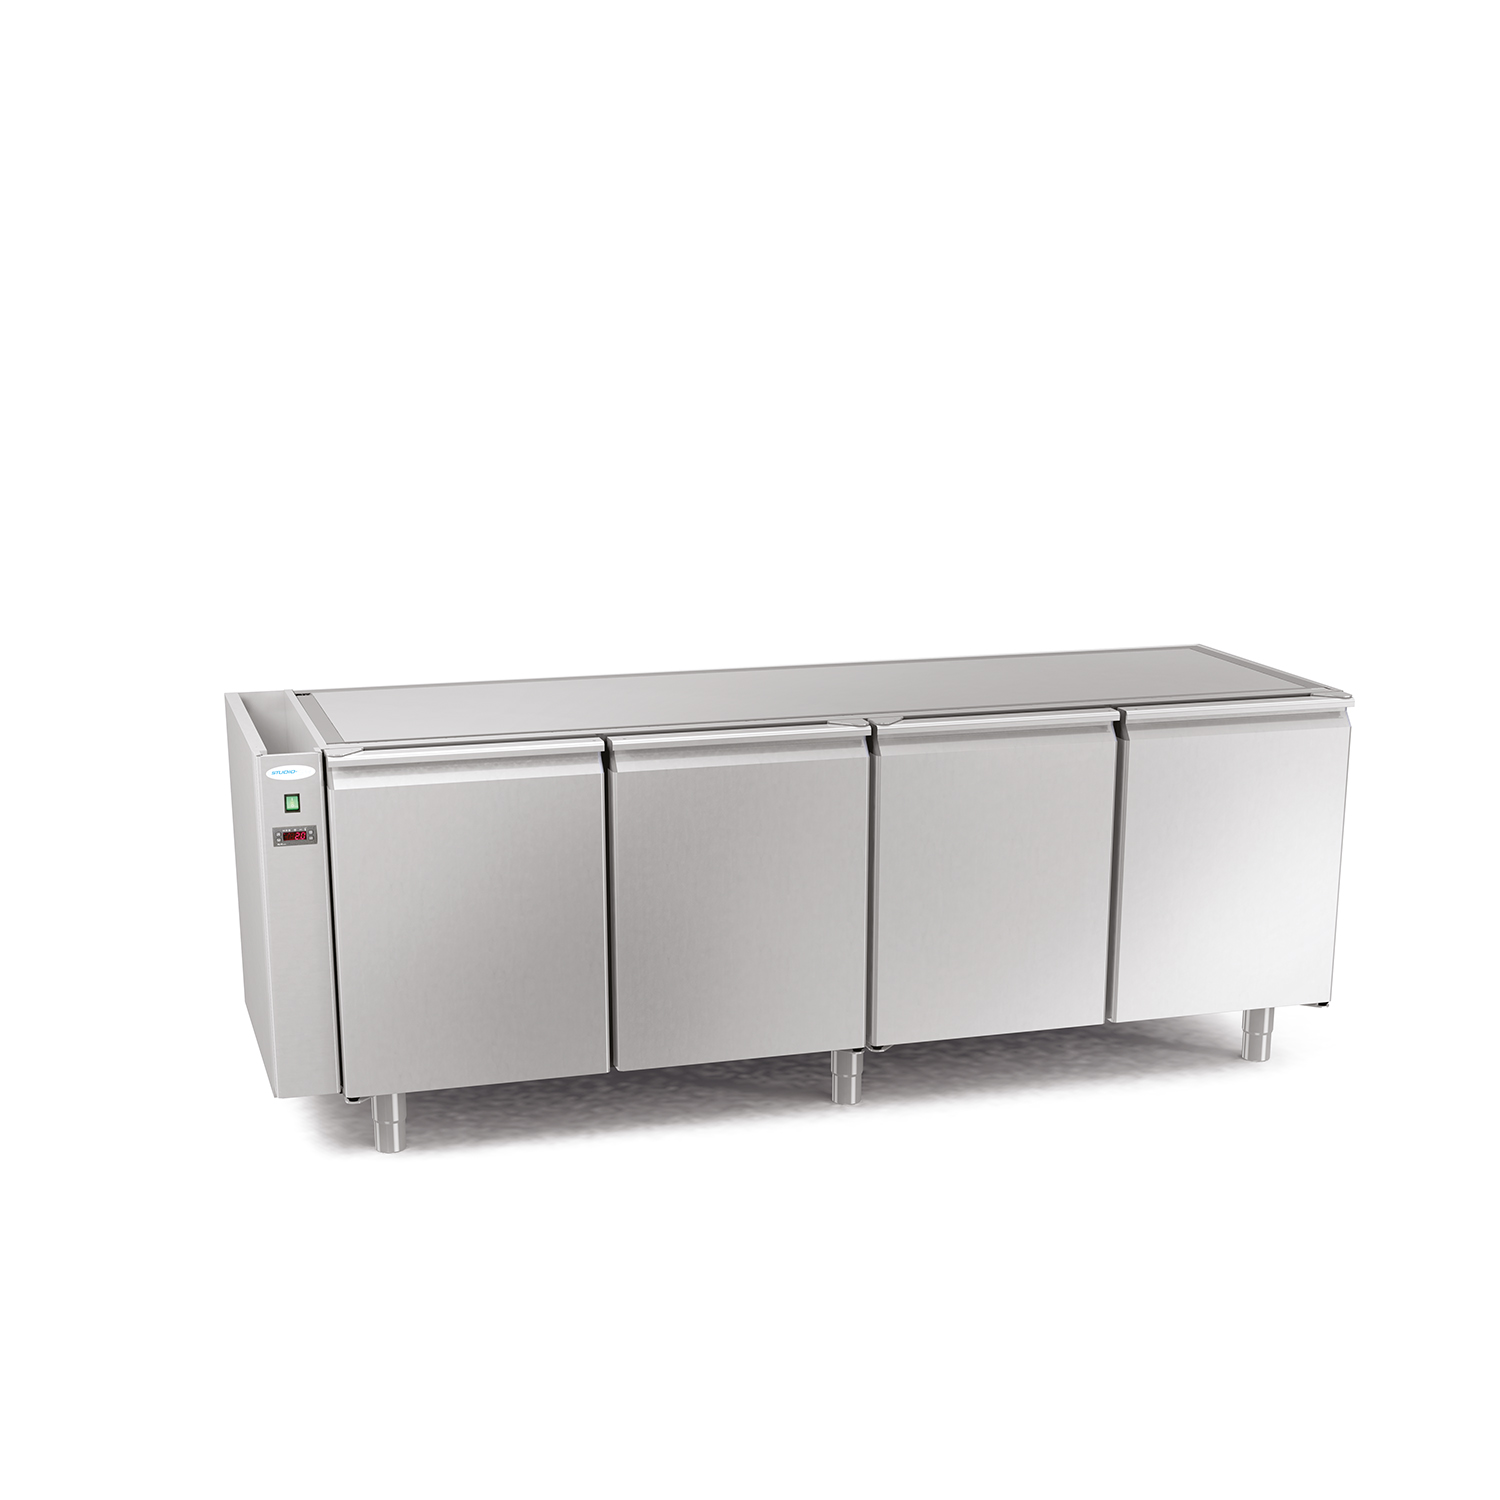 Kühltisch DAIQUIRI CONCEPT, B 2144 x T 700 x H 760 mm, mit 4 Kühlfächer, zentralgekühlt